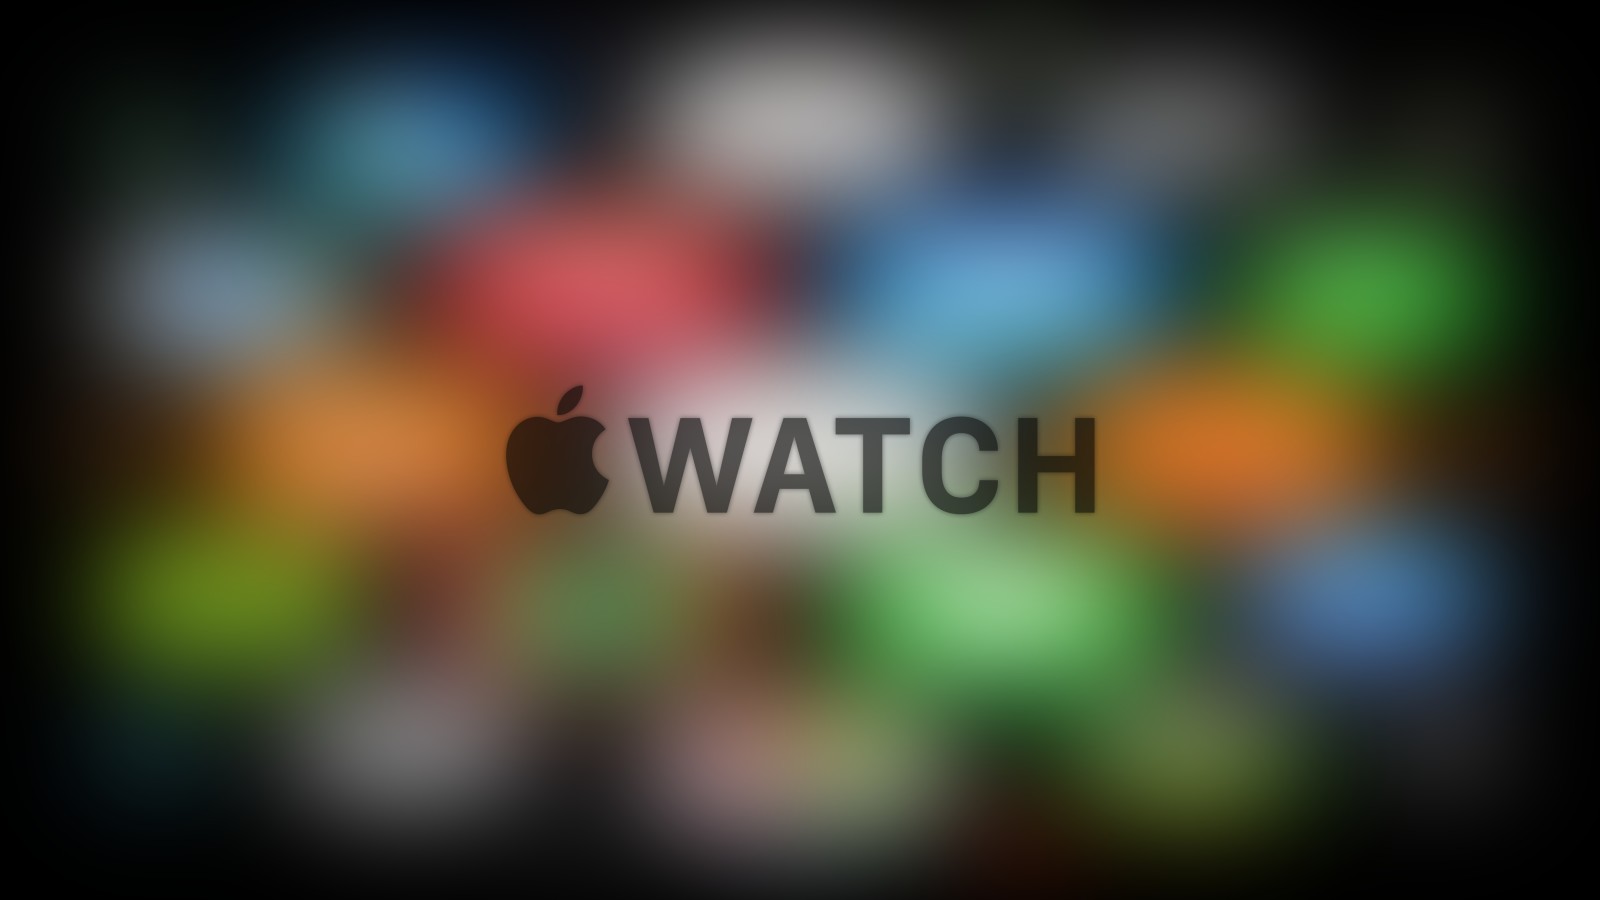 심벌 마크, 색깔, 흐리게, 사과, 아이폰, iOS, 아이맥, 망막